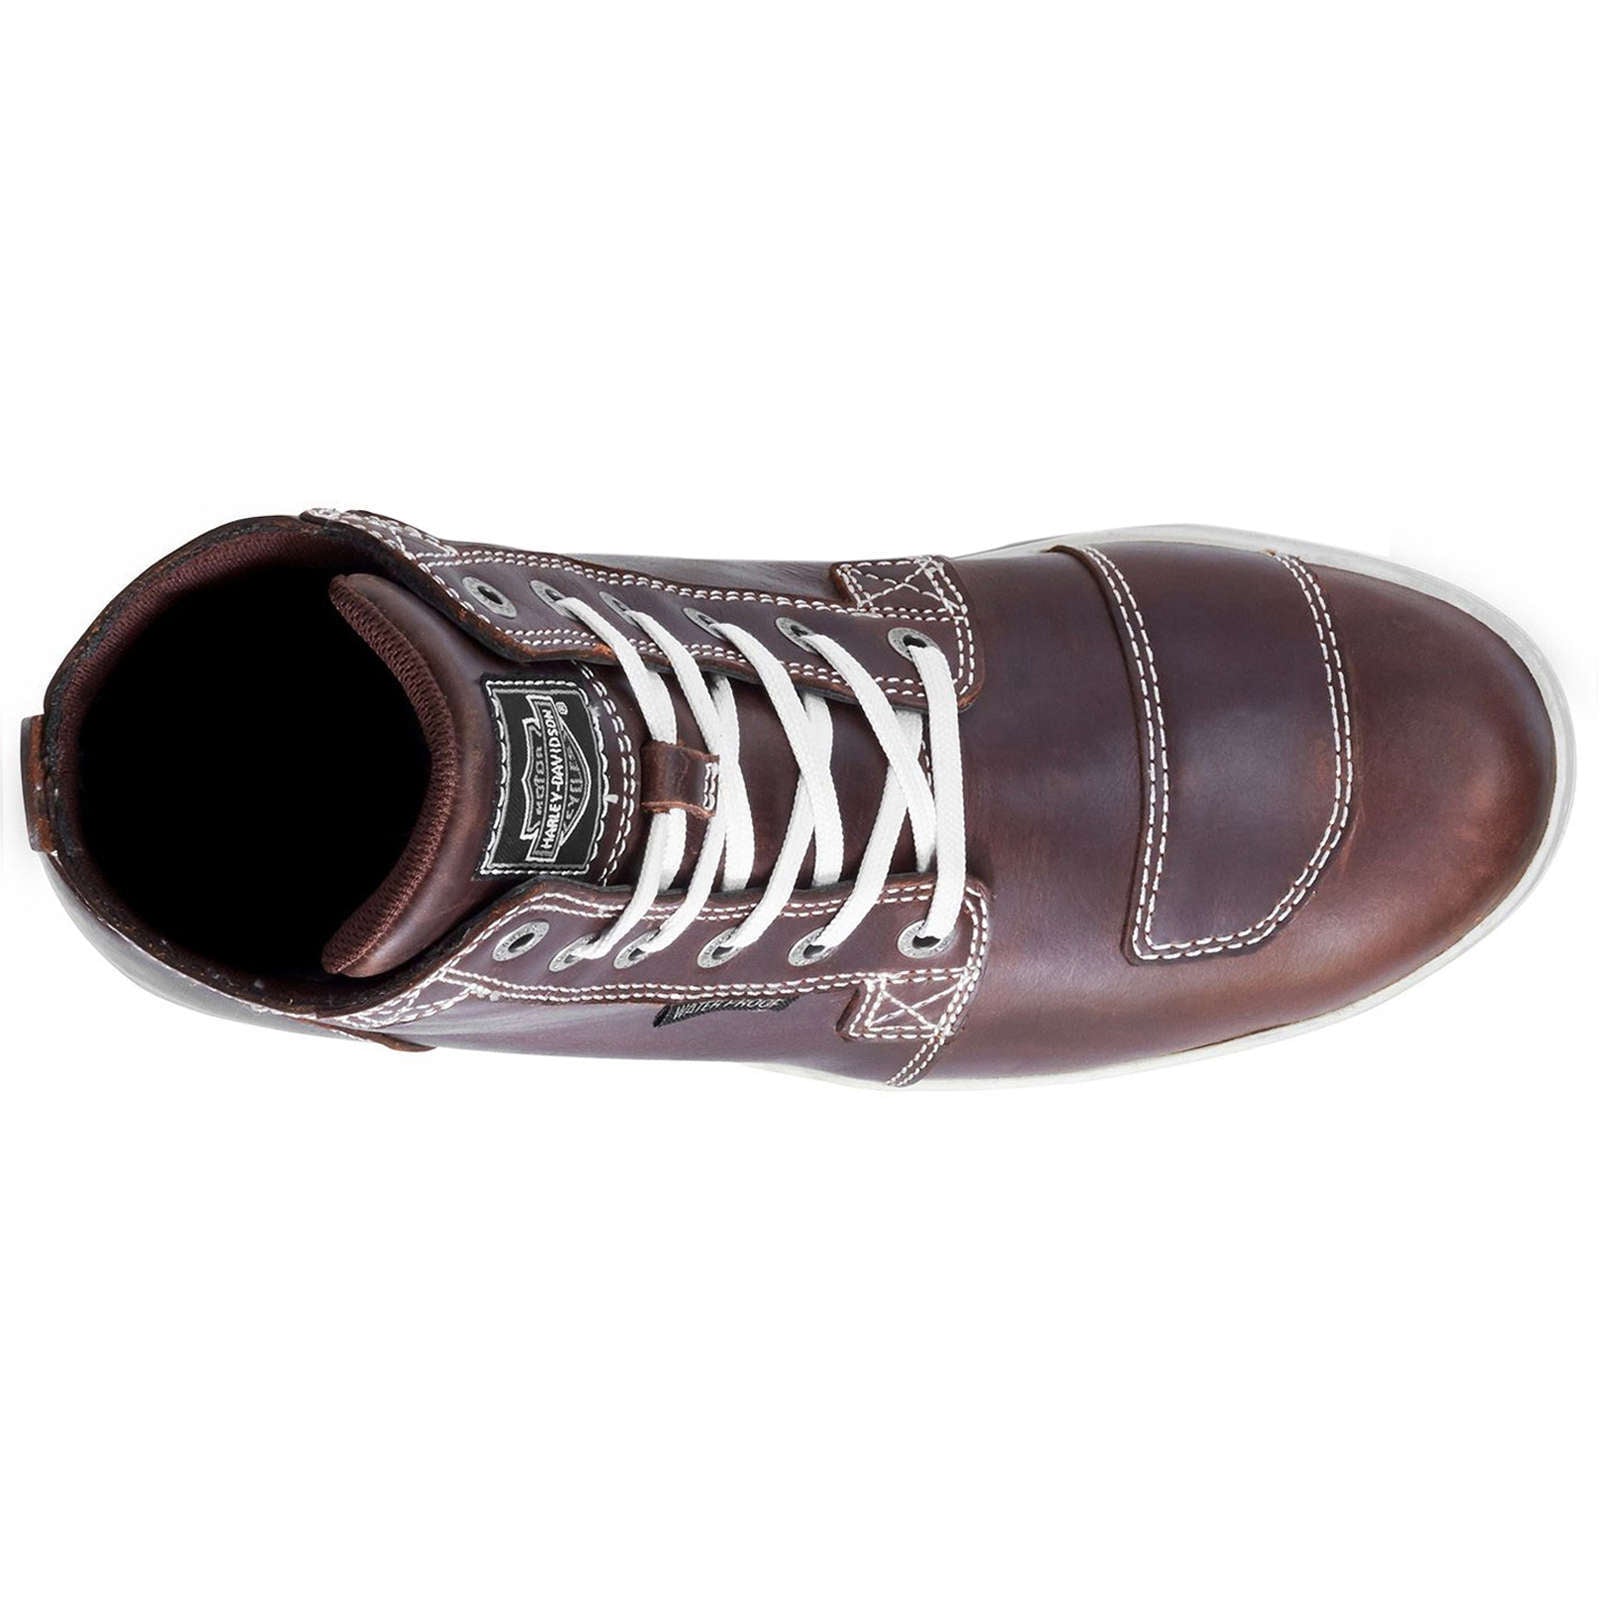 Harley Davidson Steinman Waterproof Full Grain Leather Men's High-Top Sneakers#color_brown